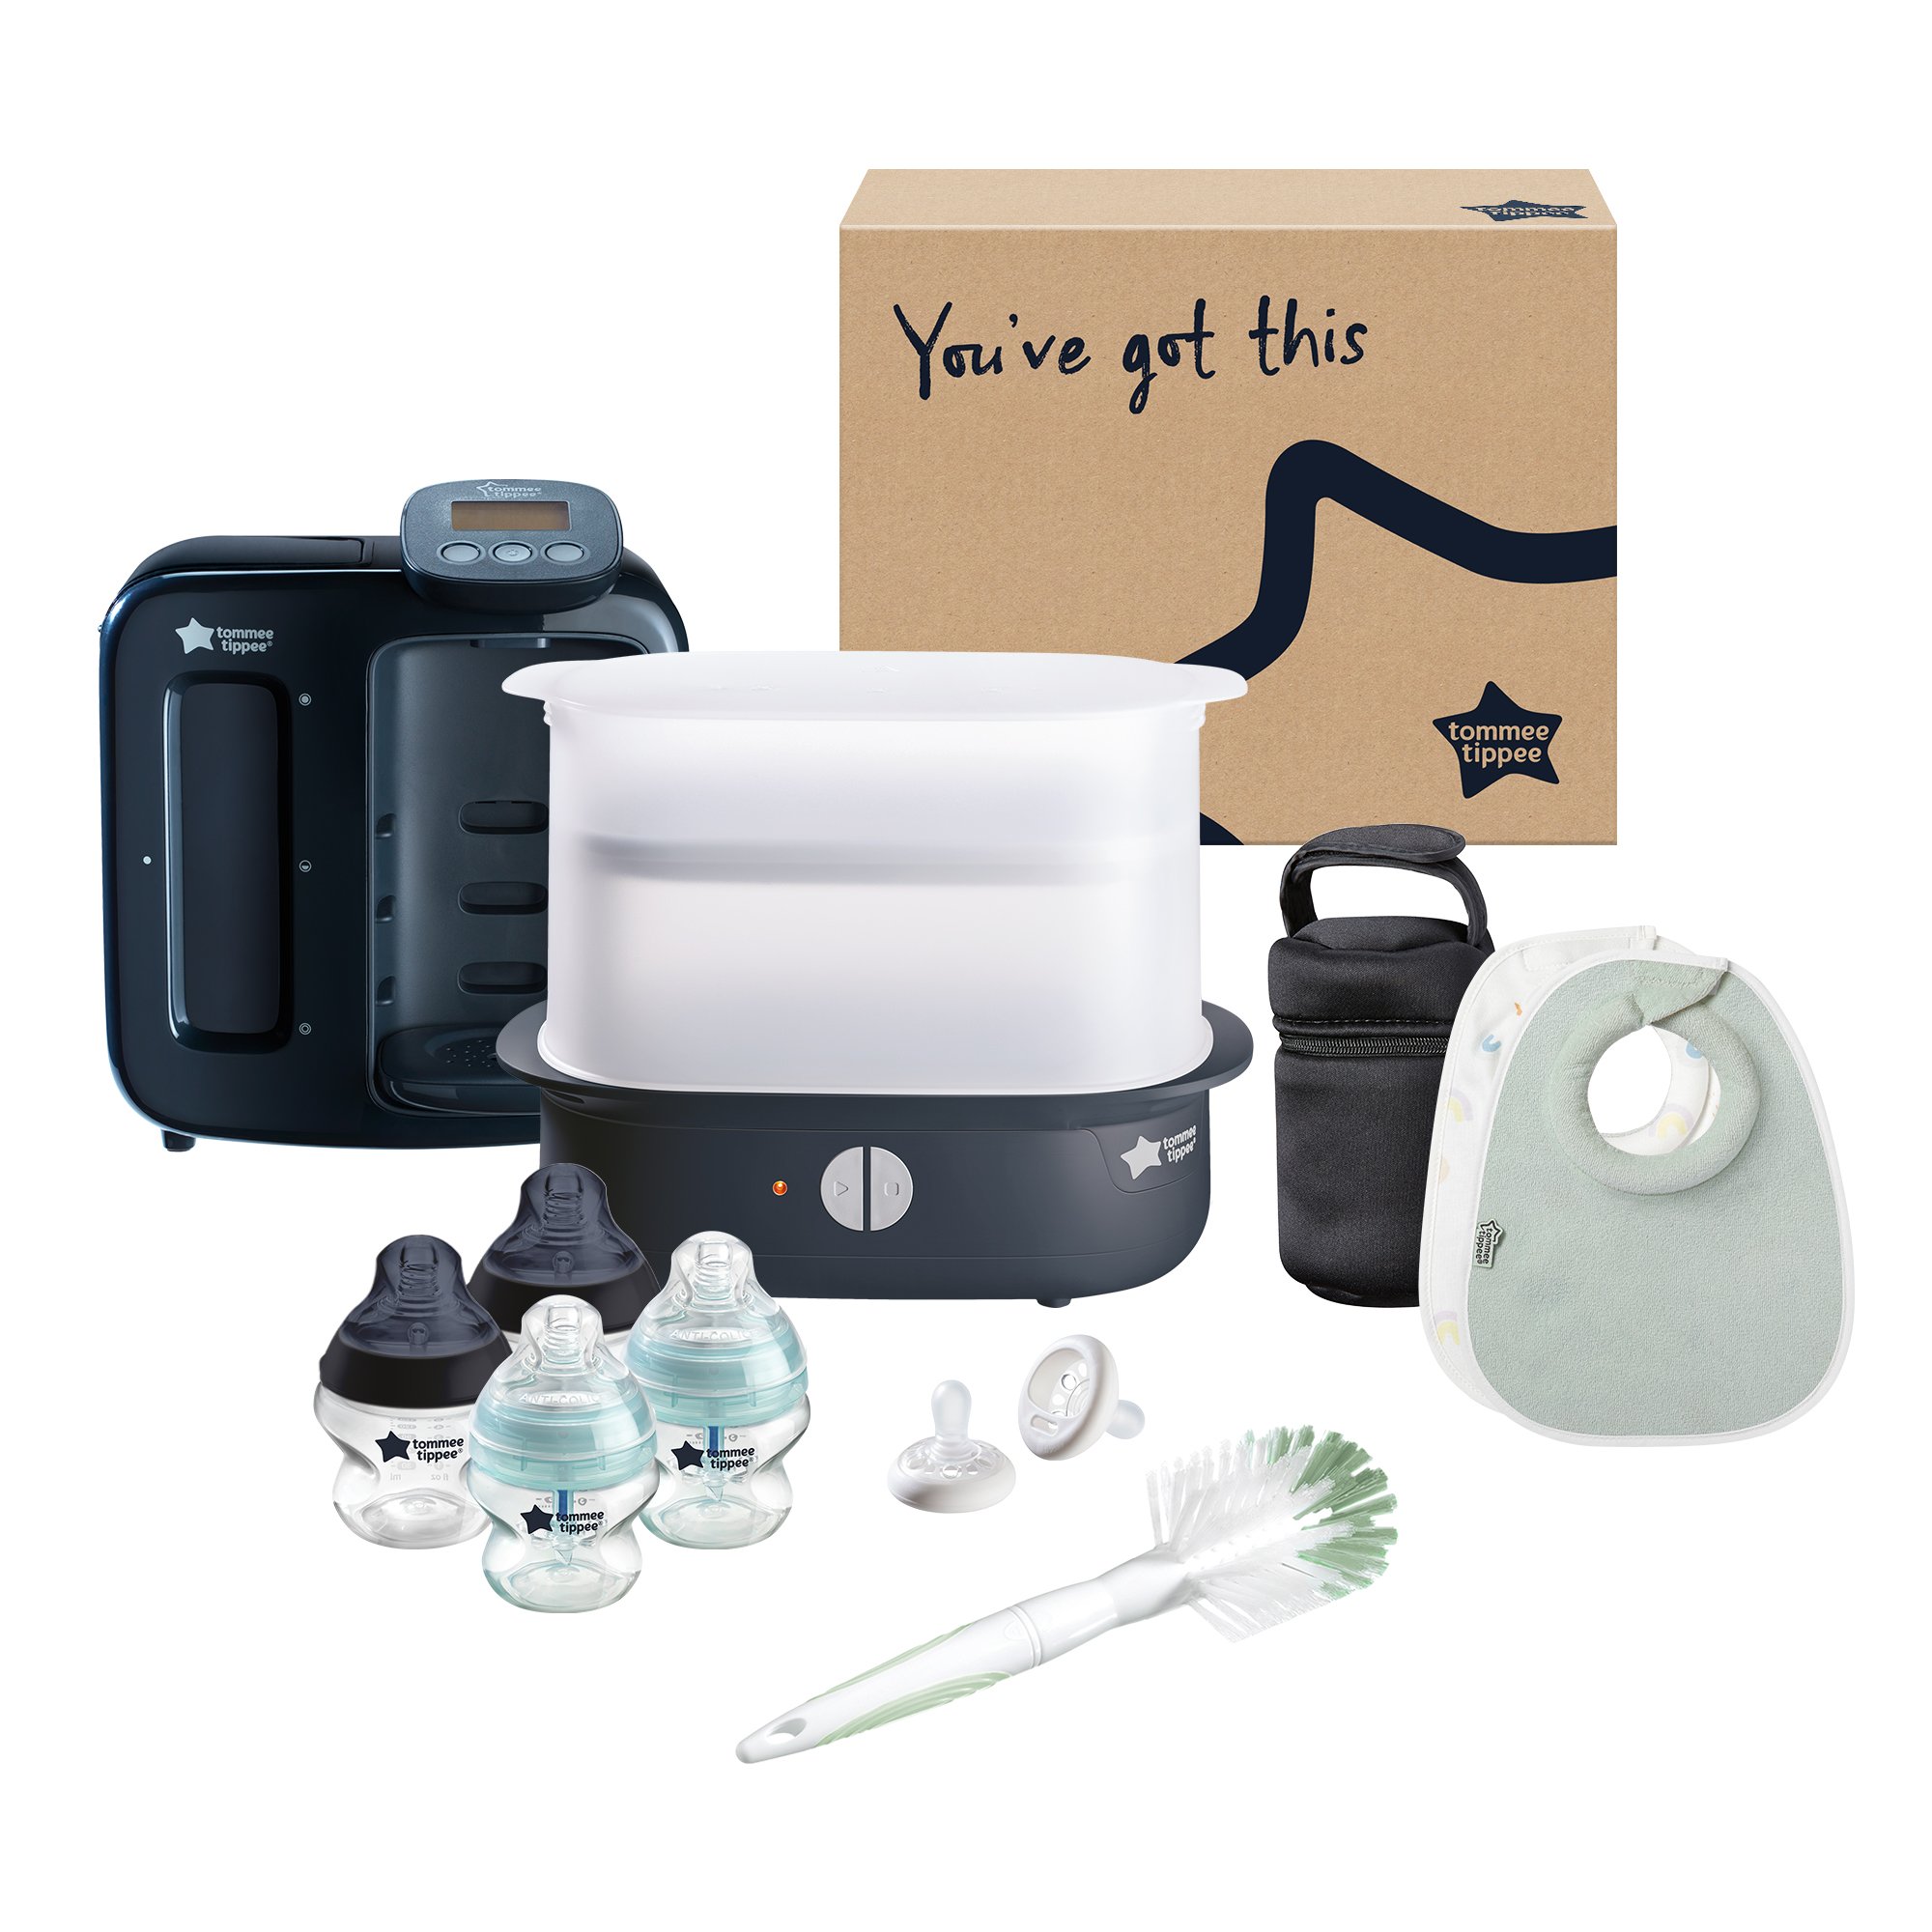 Tommee Tippee Ultimate Feeding Kit with steriliser - Black